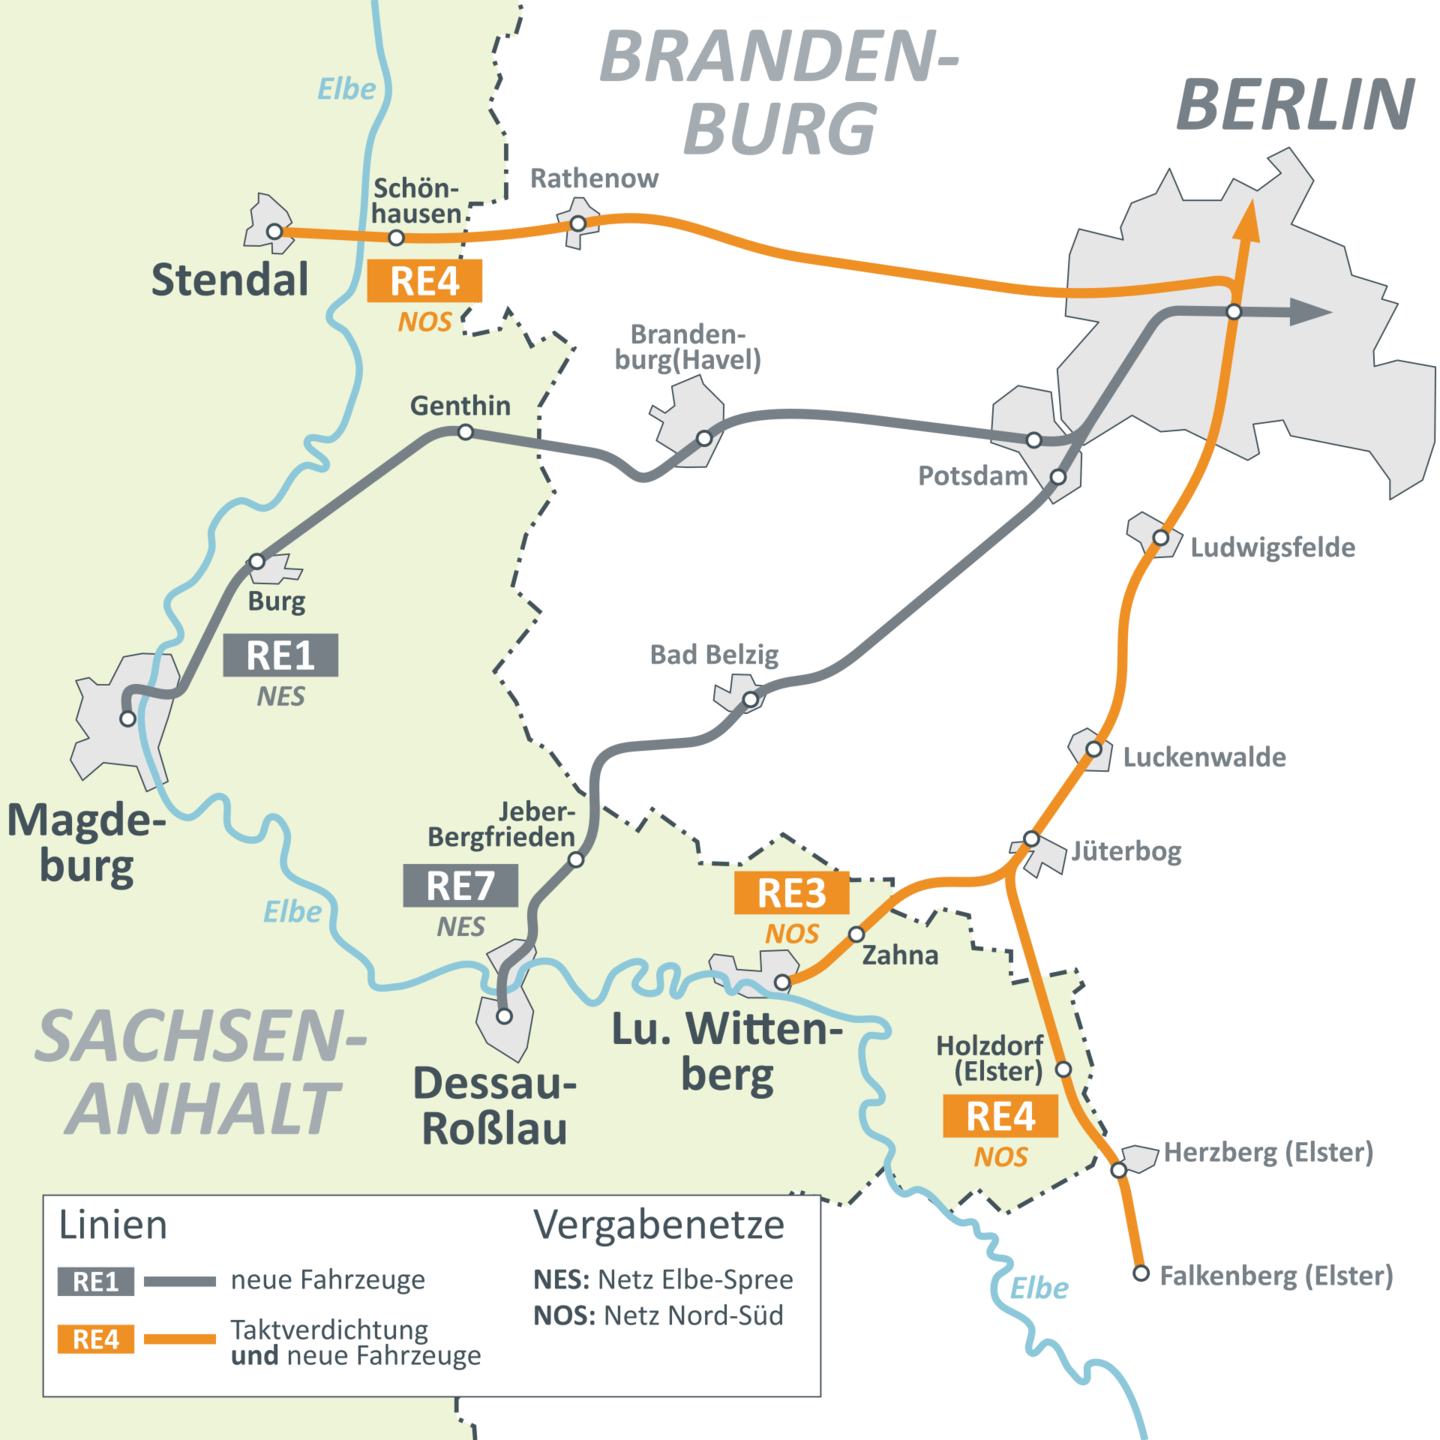 Karte mit den Bahnstrecken zwischen Sachsen-Anhalt und Berlin. Die Strecken von Stendal (RE4), Lutherstadt Wittenberg (RE3) und Falkenberg (RE4) sind orange hervorgehoben. Dort sind Taktverdichtungen und neue Fahrzeuge geplant. Die Linien RE1 von Magdeburg und RE7 von Dessau sind grau dargestellt. Hier gibt es nur neue Fahrzeuge.